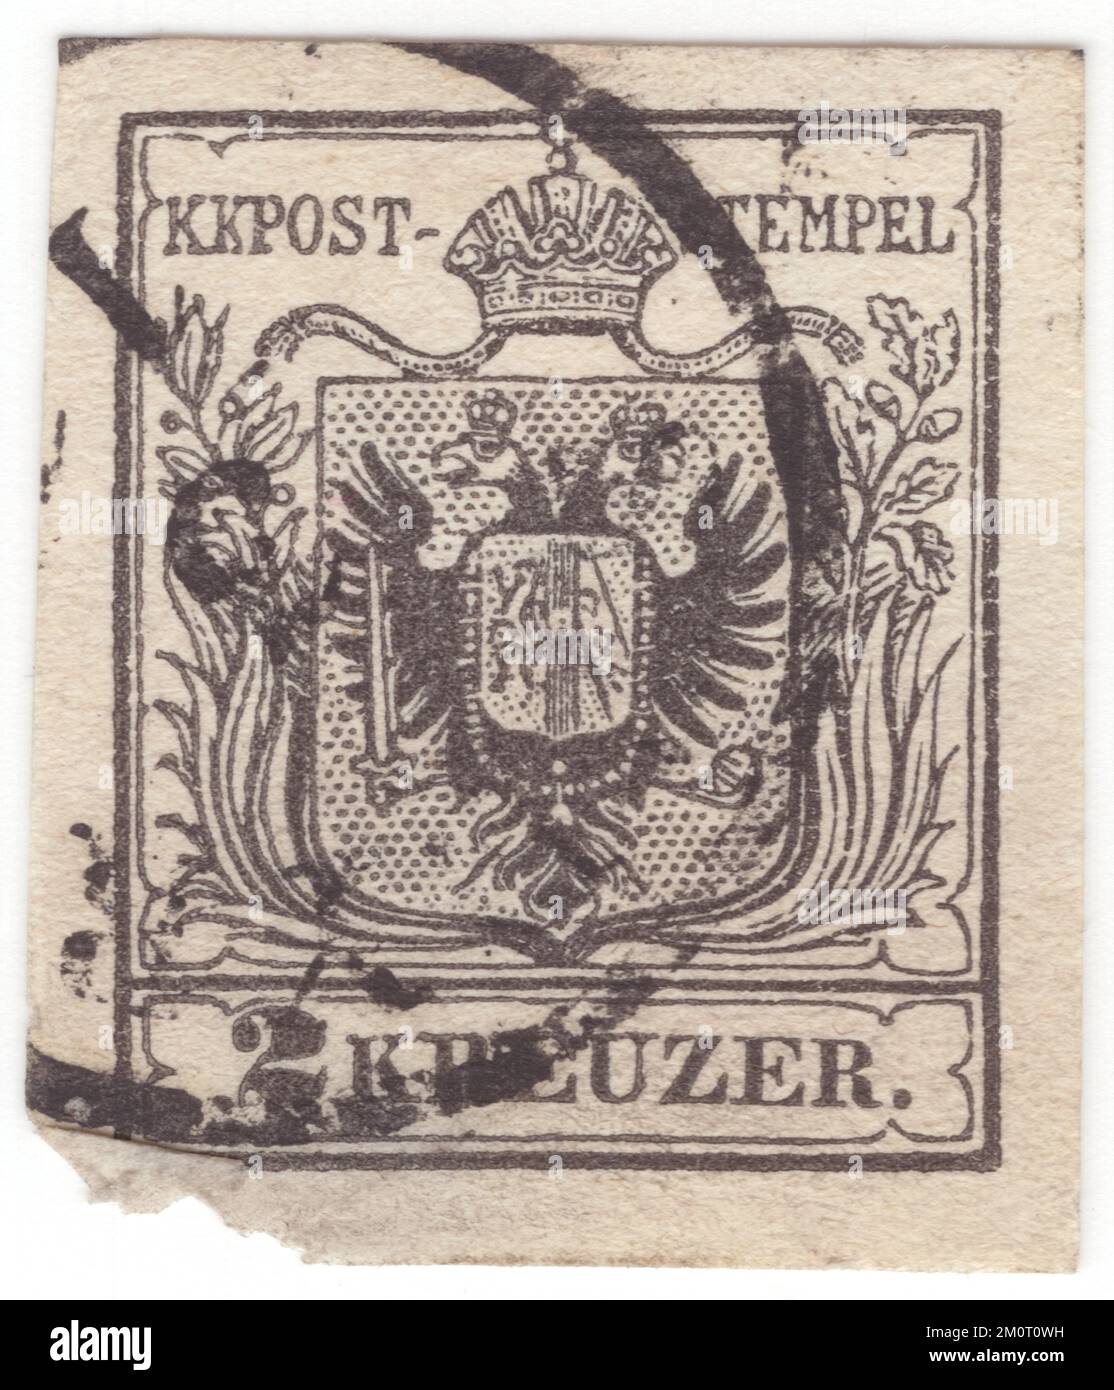 ÖSTERREICH — 1850. Juni 1: Ein schwarzer 2-Kreuzer-Briefstempel, der den Wappen der österreichischen Monarchie darstellt. Die erste Ausgabe der österreichischen Monarchie (einschließlich Ungarn) Briefmarken. Die erste Briefmarkenausgabe des Reiches von Österreich war eine Reihe imperforierter, typografierter Briefmarken mit dem Wappen. Zuerst wurden sie auf grobes, handgefertigtes Papier gedruckt, aber nach 1854 wurde stattdessen glattes, maschinengefertigtes Papier verwendet. Die Briefmarken des Österreichischen Reiches wurden erstmals am 1. Juni 1850 ausgestellt: Ein Wappen unter dem Text KK Post-Stempel Stockfoto